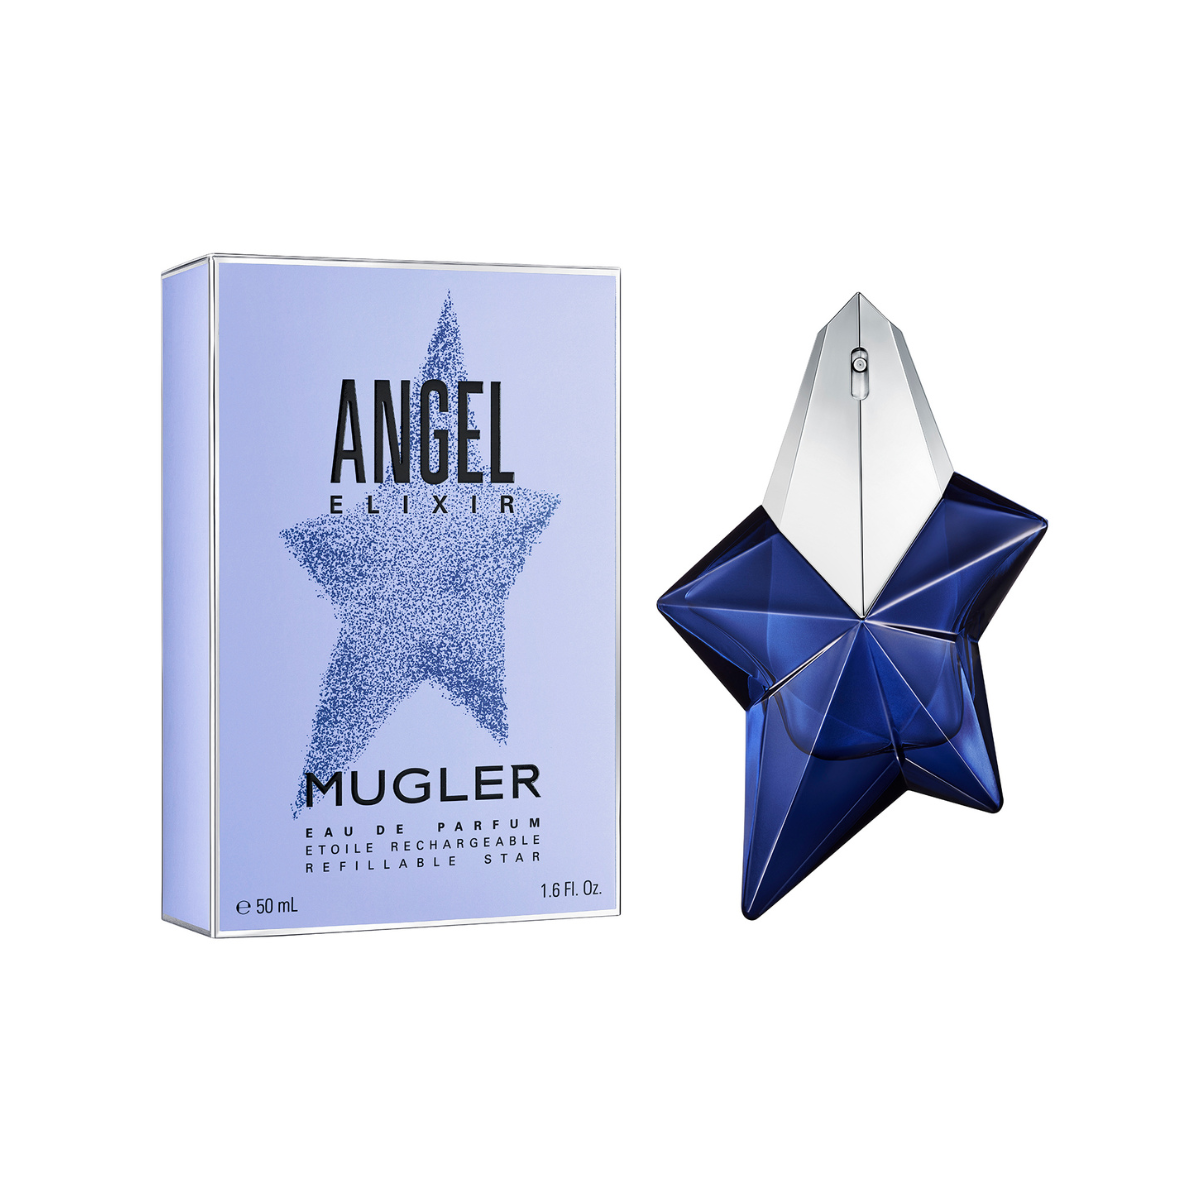 Mugler Angel Elixir Eau de Parfum